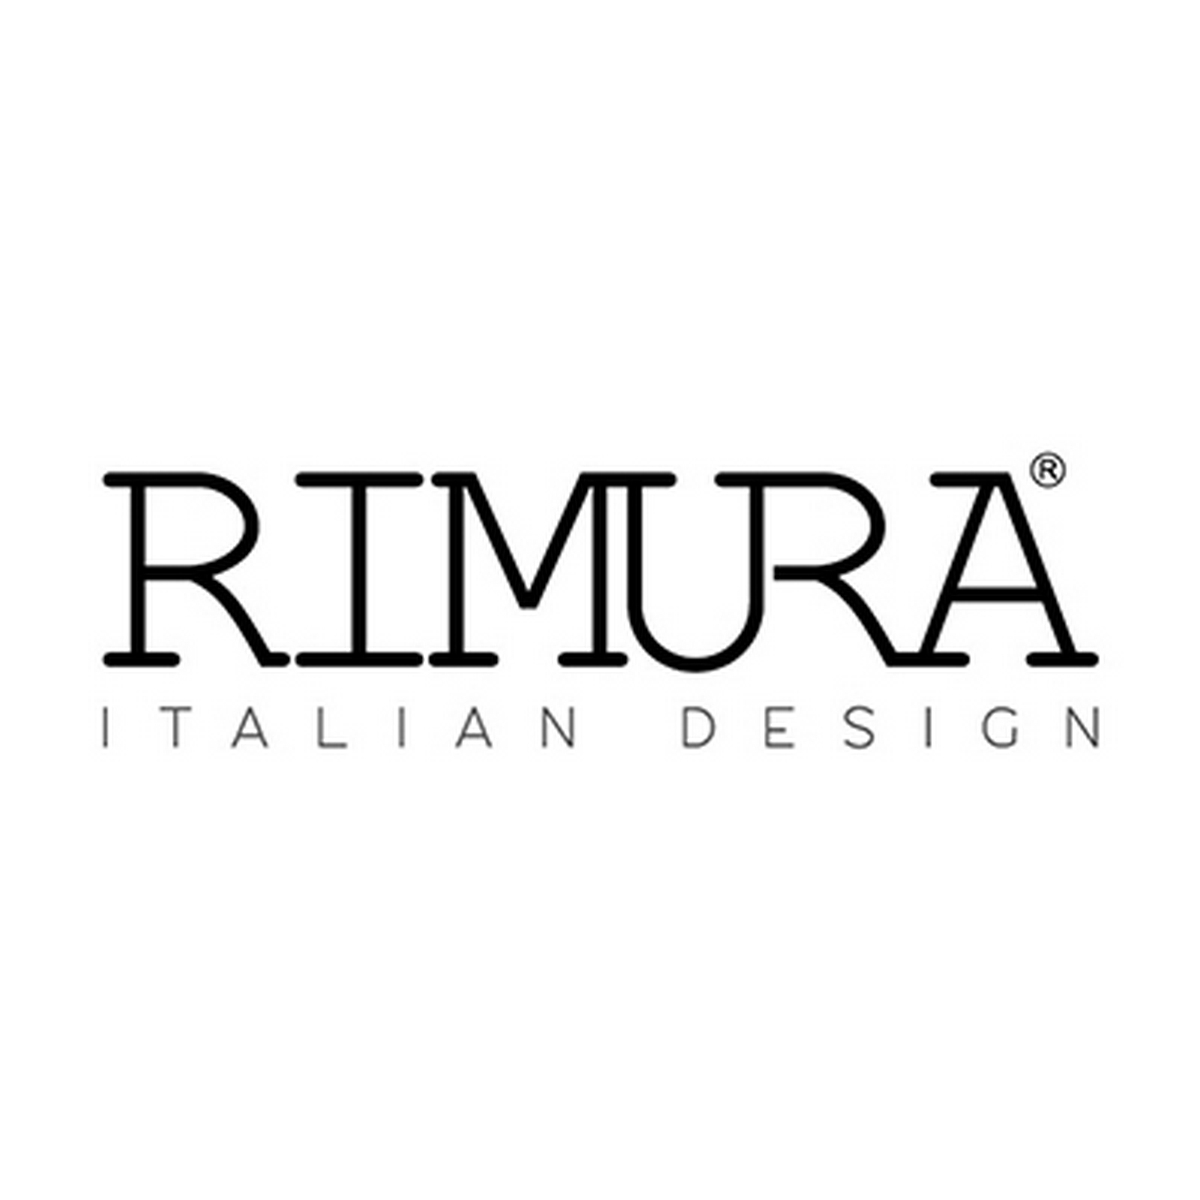 RIMURA ITALIAN DESIGN